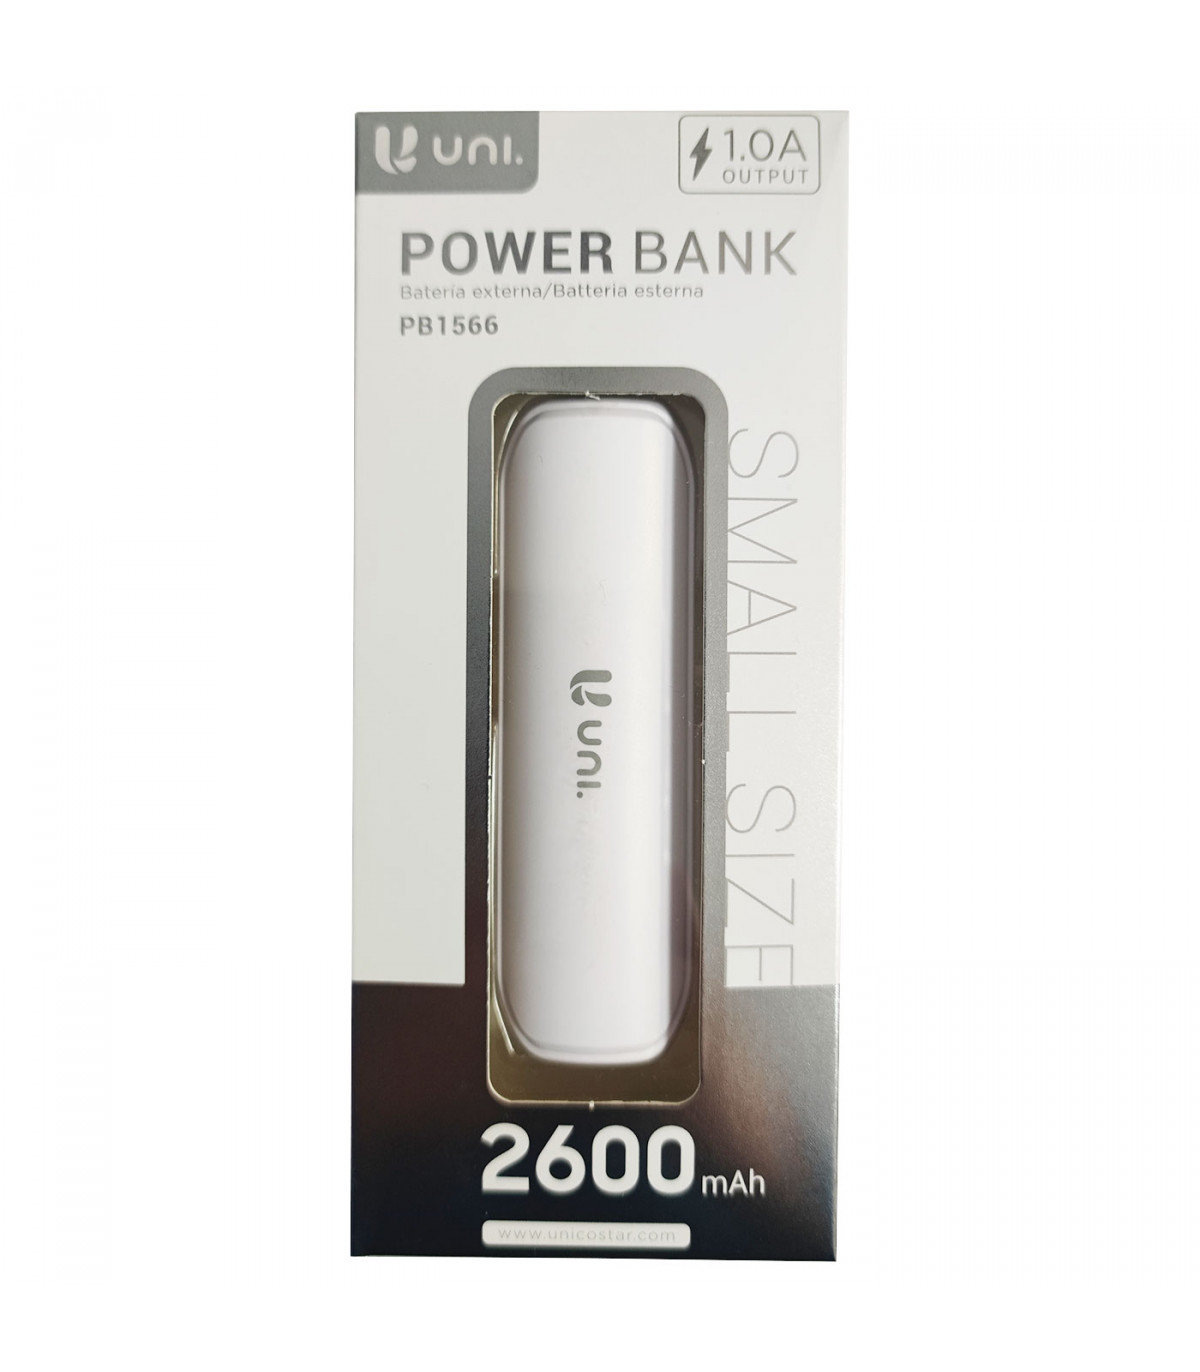 Batería externa blanca 2600 mAh, 1.0A, cable micro-USB, indicador